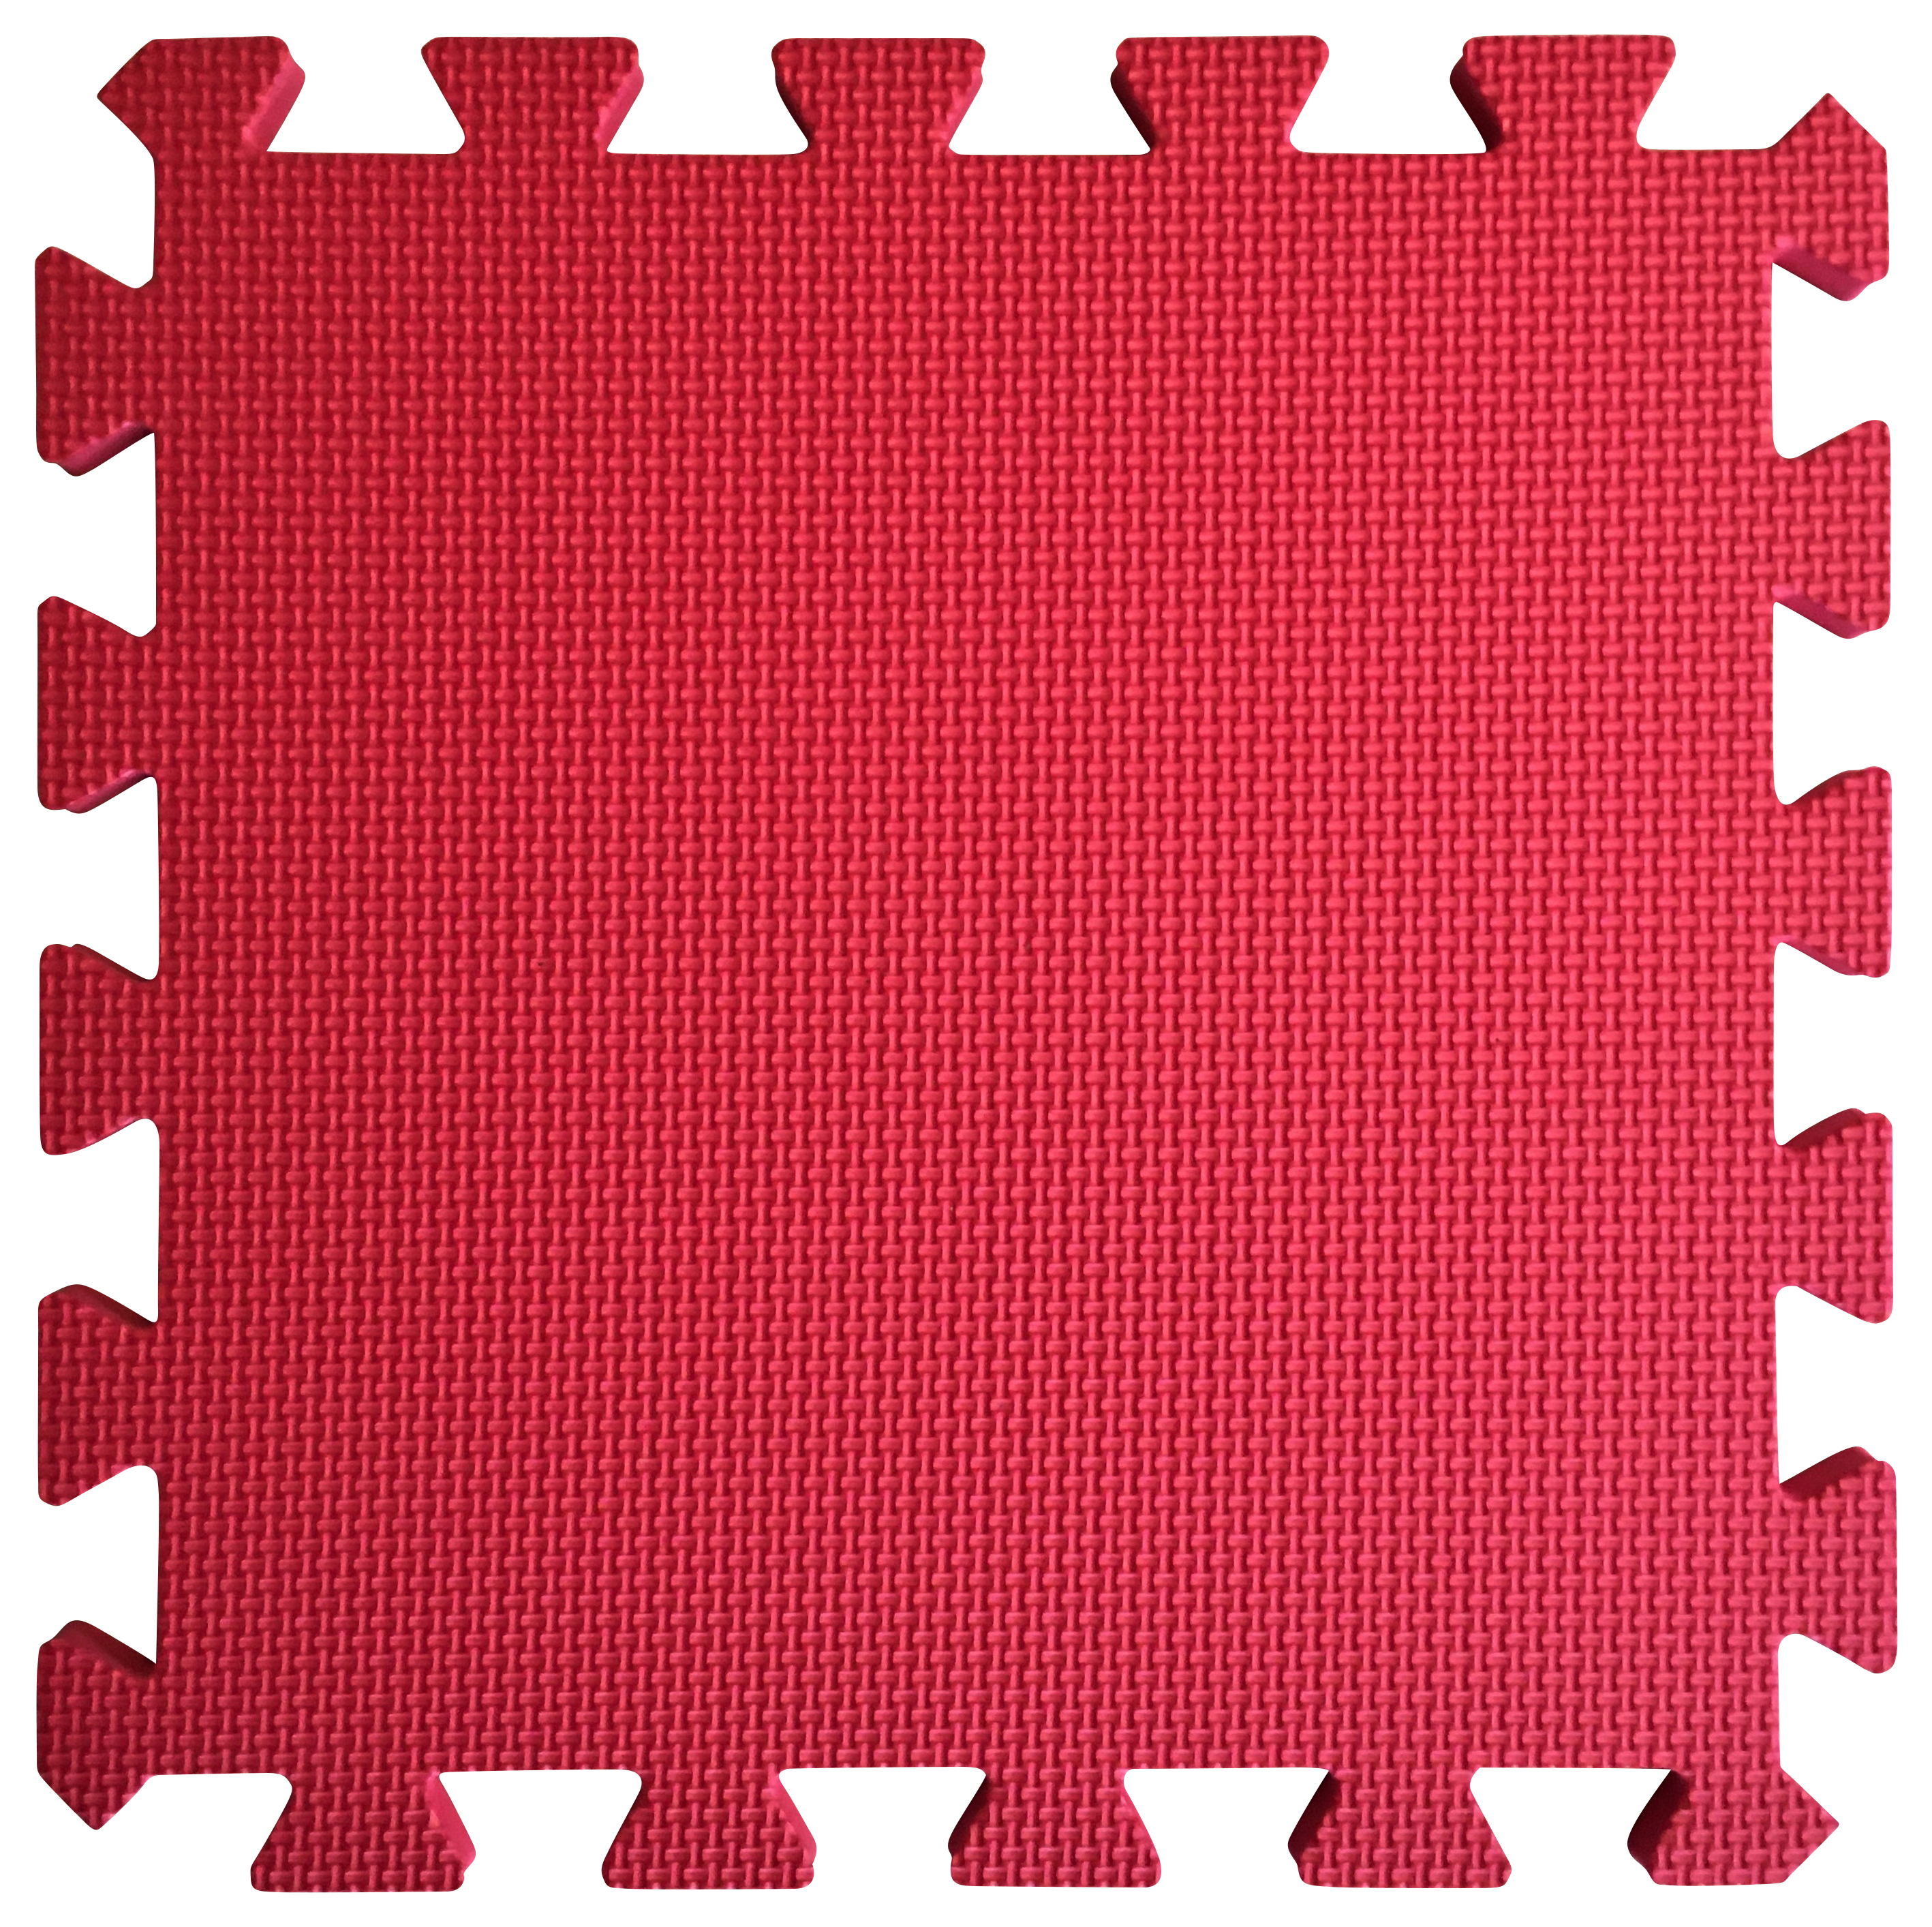 Image of Warm Floor Red Interlocking Floor Tiles for Garden Buildings - 5 x 10ft